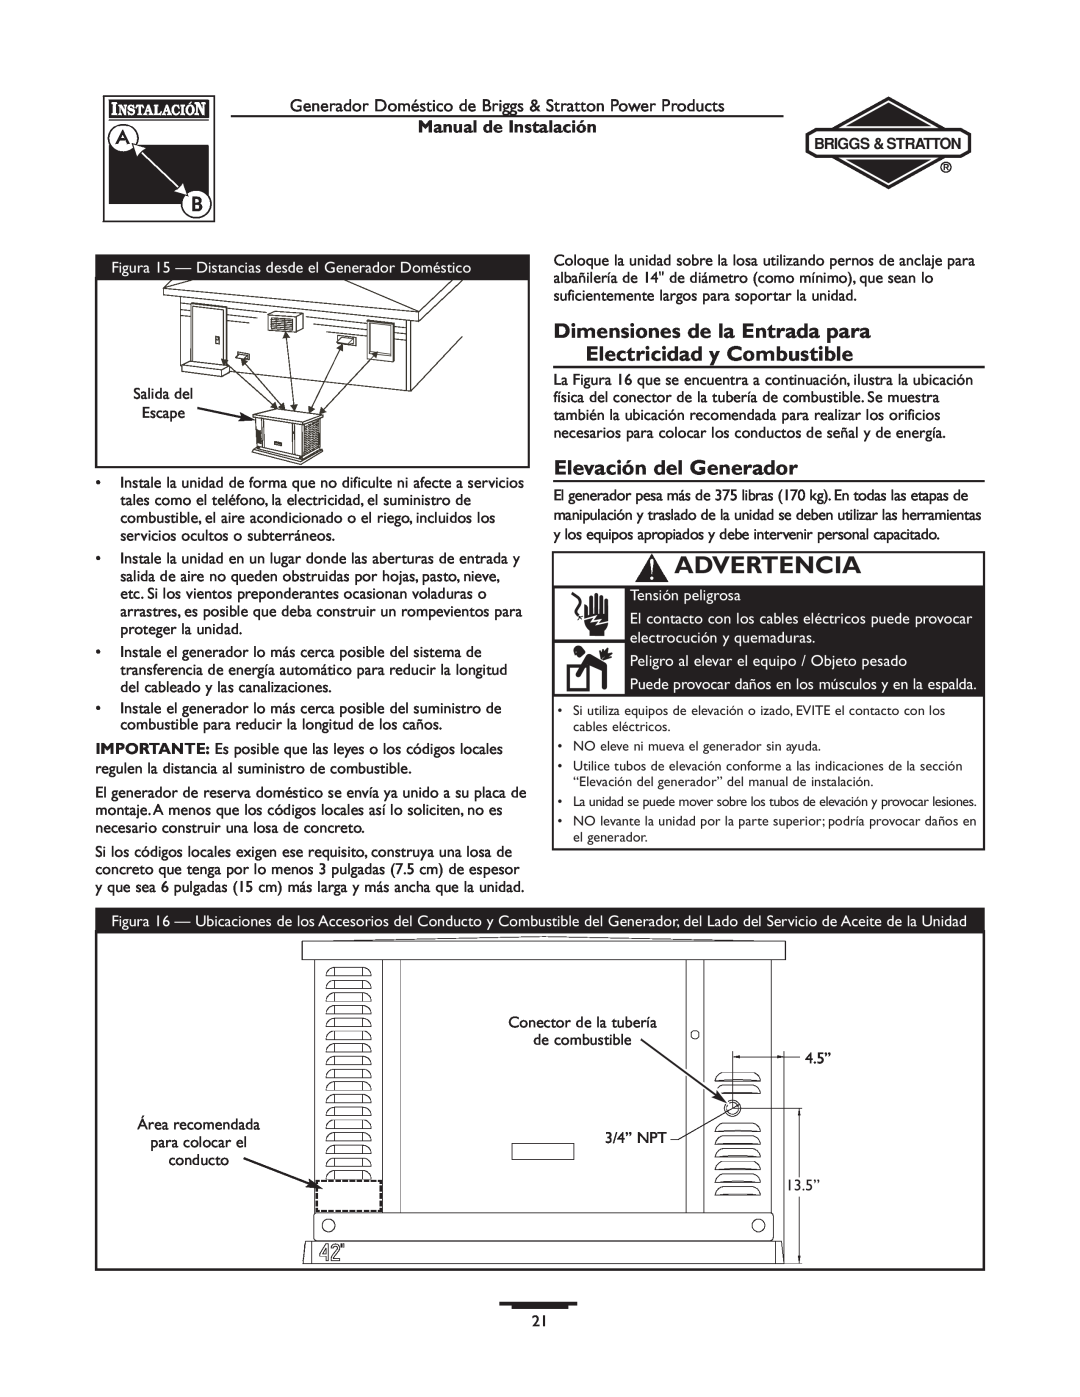 Briggs & Stratton 01815-0 Dimensiones de la Entrada para Electricidad y Combustible, Elevación del Generador, Advertencia 